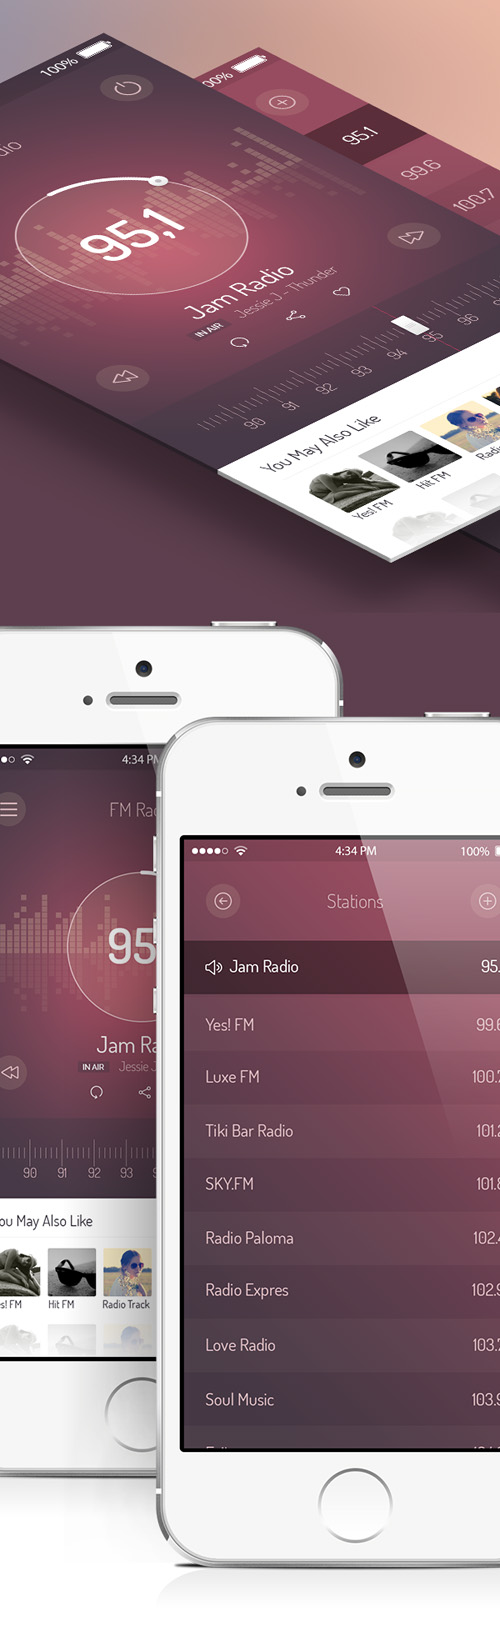 FM Radio UI - iOS 7 App